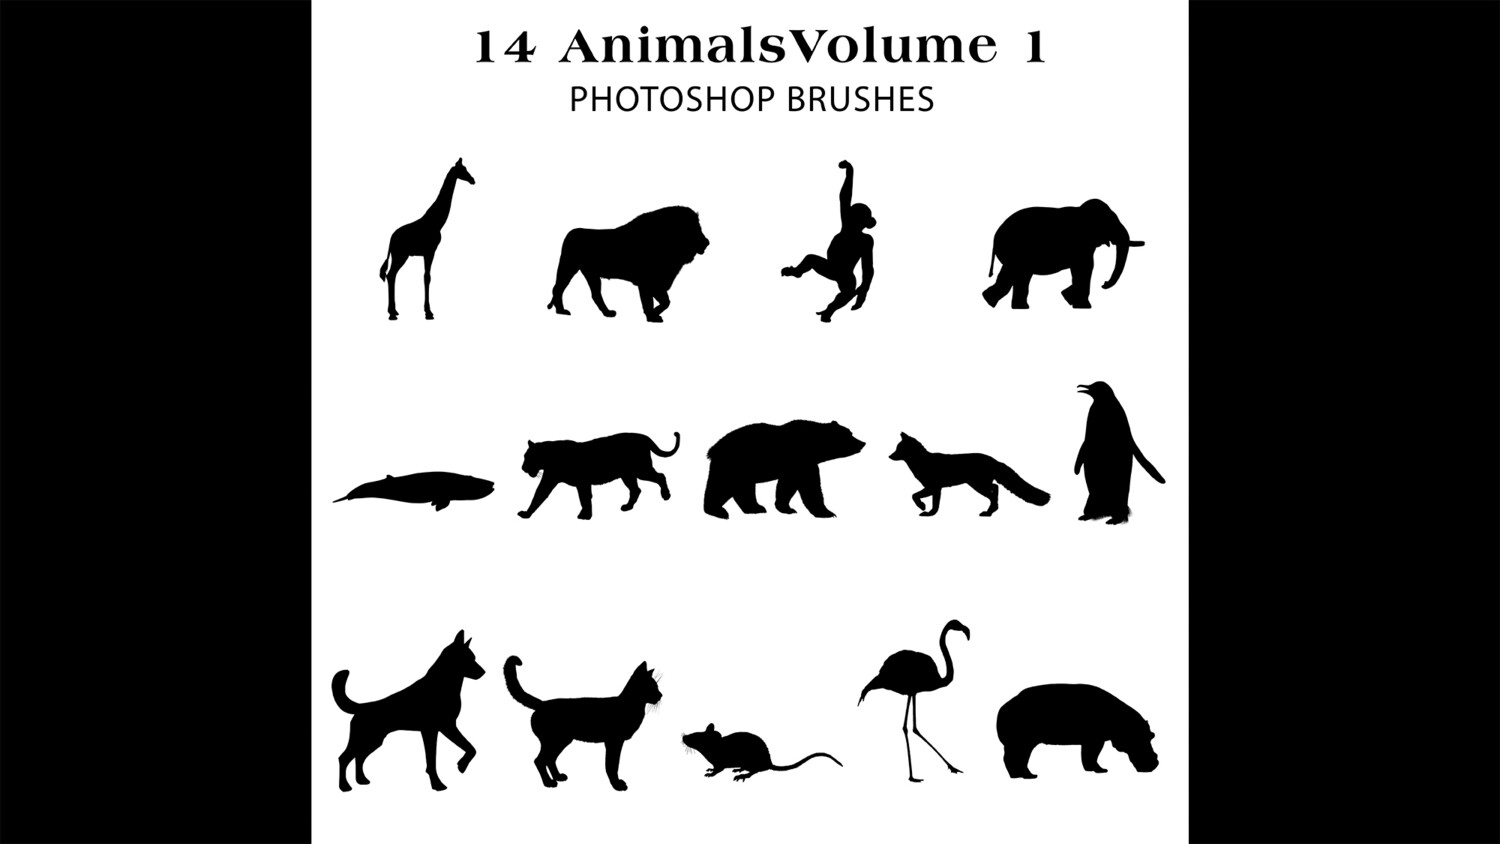 Photoshop Brushes - 14 Animal silhouette Brushes Volume 1 , giraffe, lion, flamingo, bear, elephant, monkey and more.